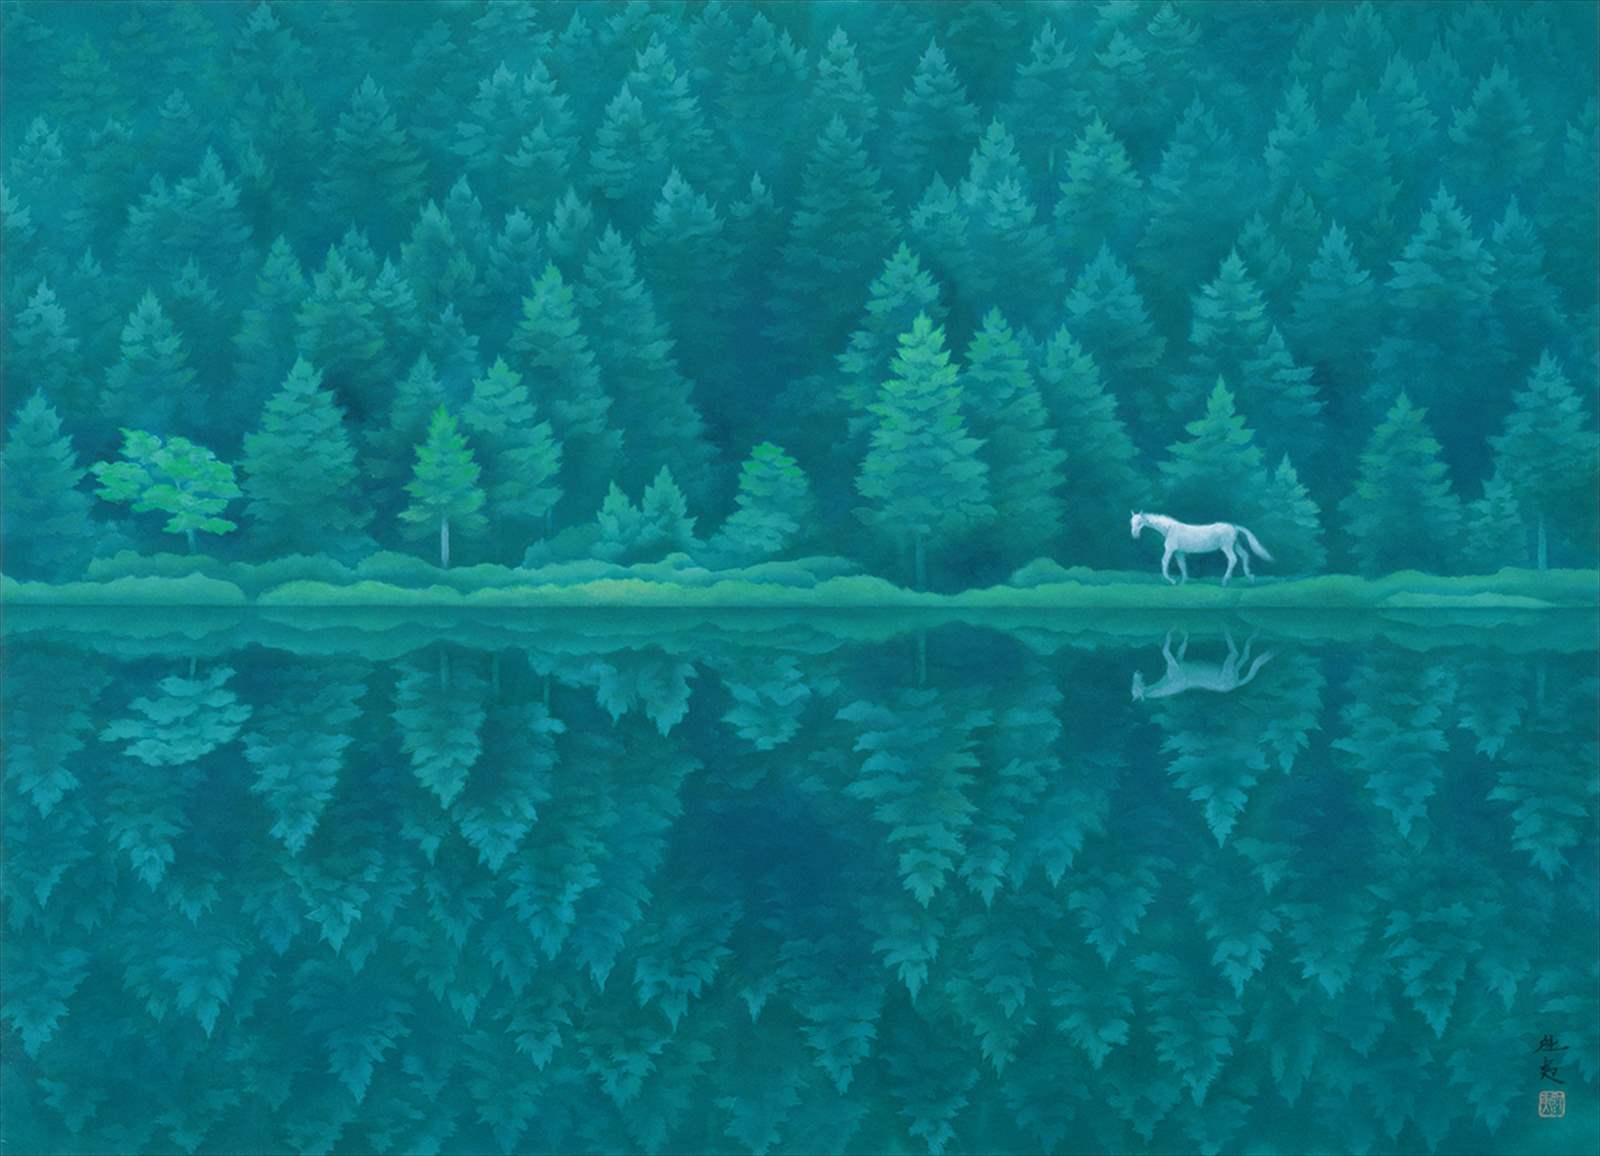 長野 御射鹿池 絵画のモチーフにもなった 森に囲まれた神秘的な池